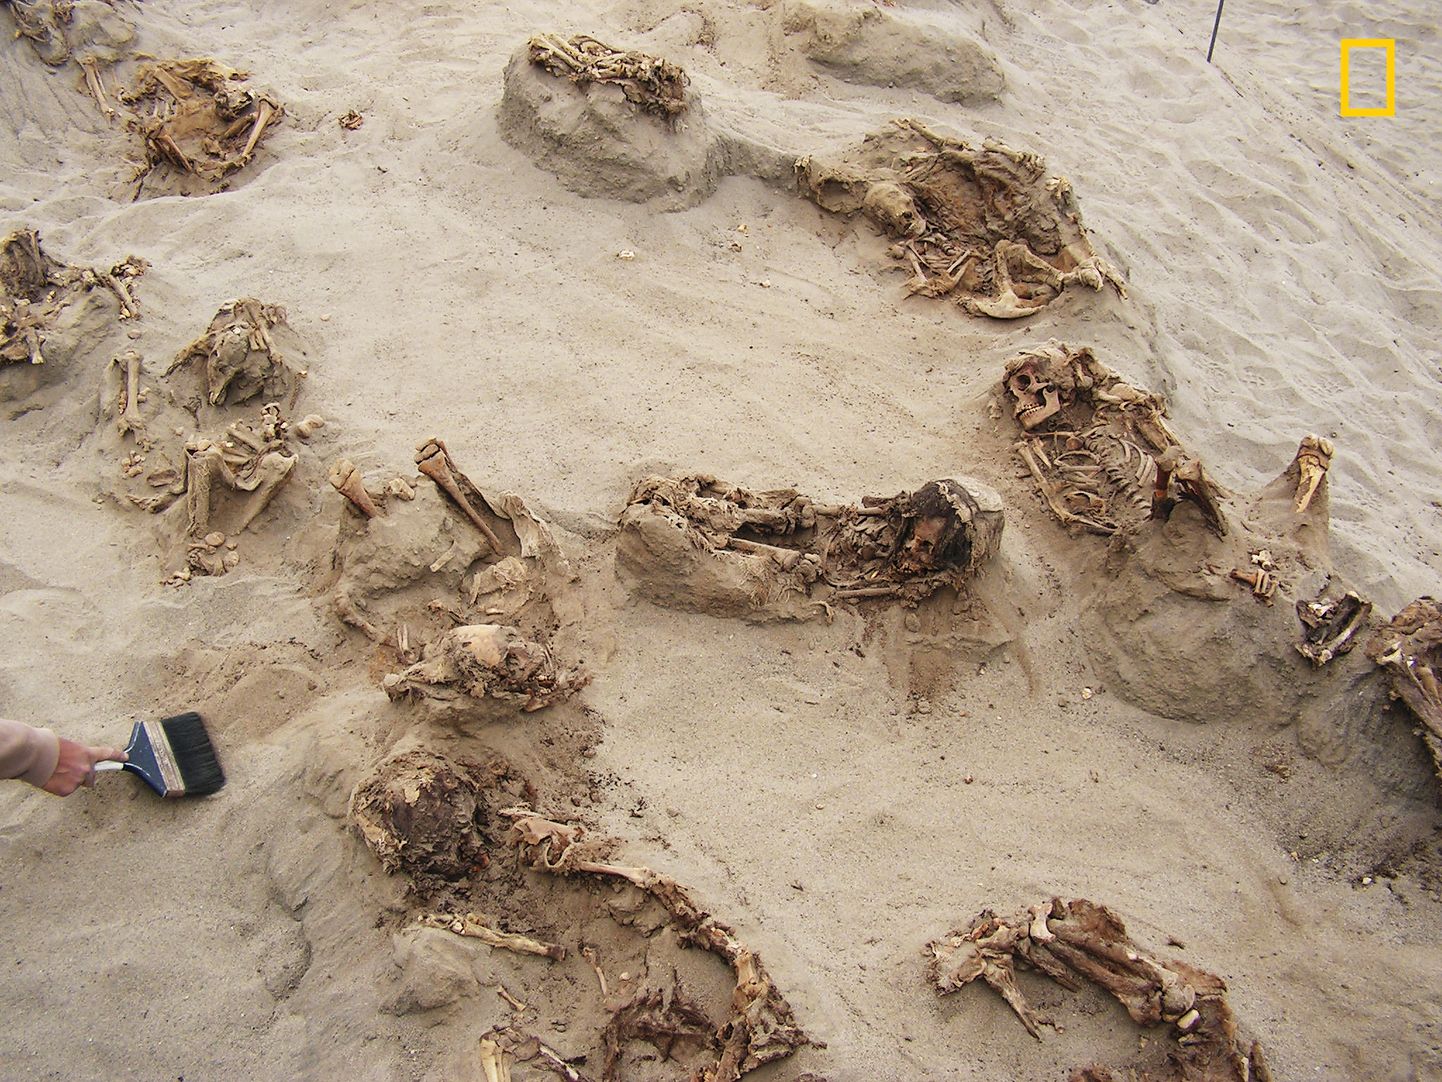 Jumalatele ohverdatud laste skeletid enam kui poole tuhande aasta taguses massihauas Las Llamase matmispaigas Trujillo lähistel Peruus.